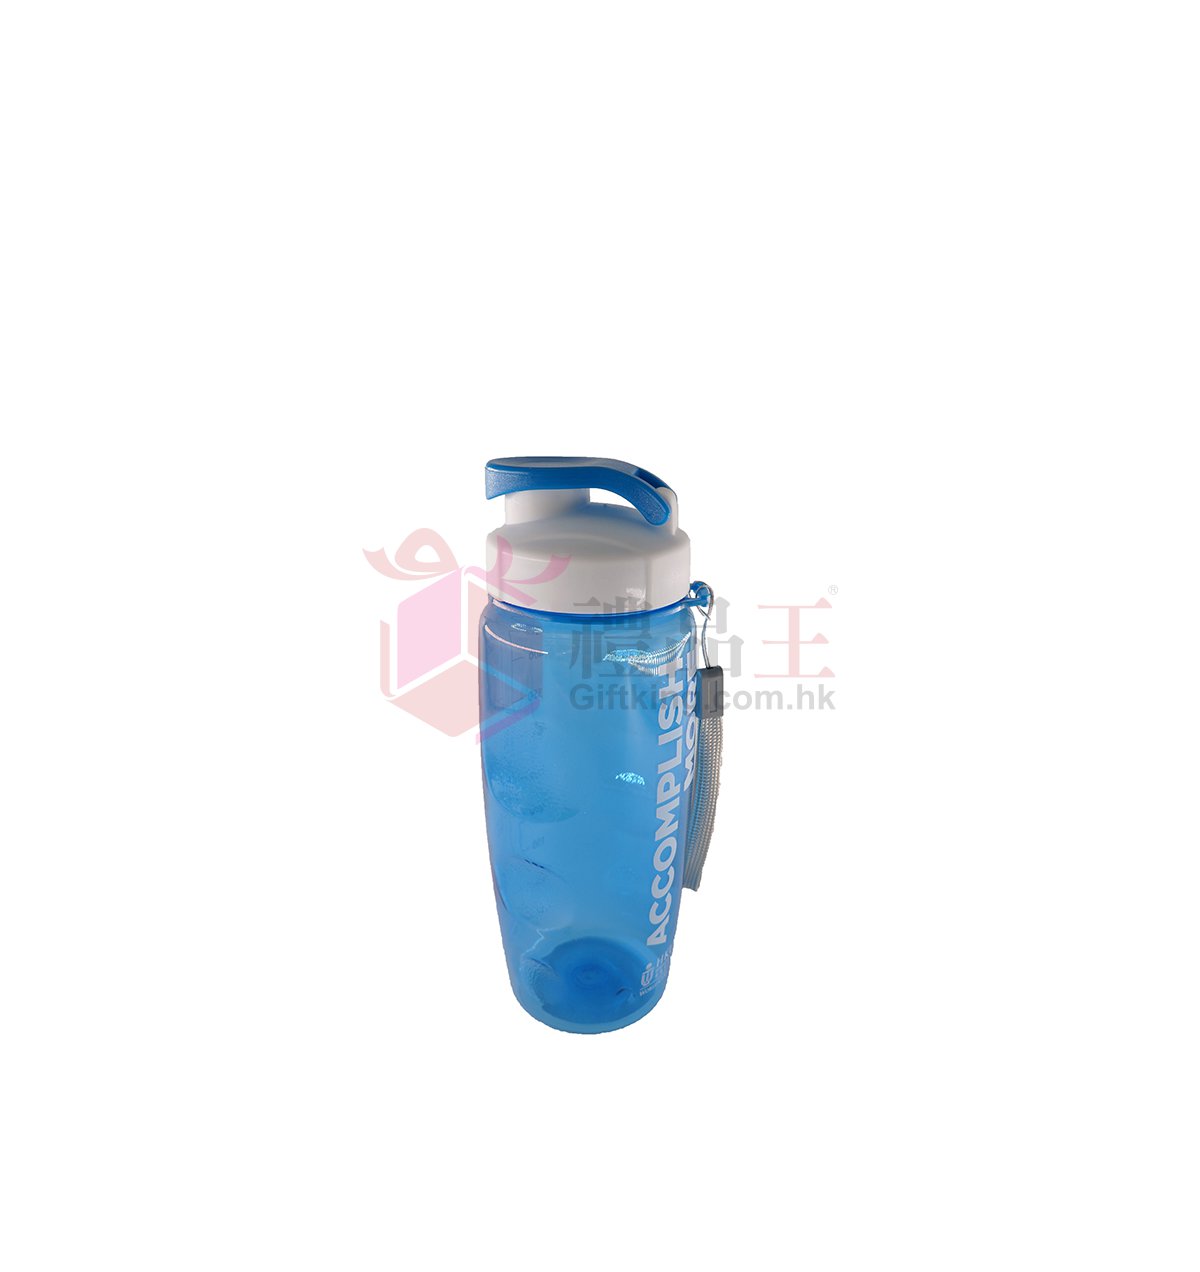 HKUST Business School Sports Water Bottle (Sports Gift)